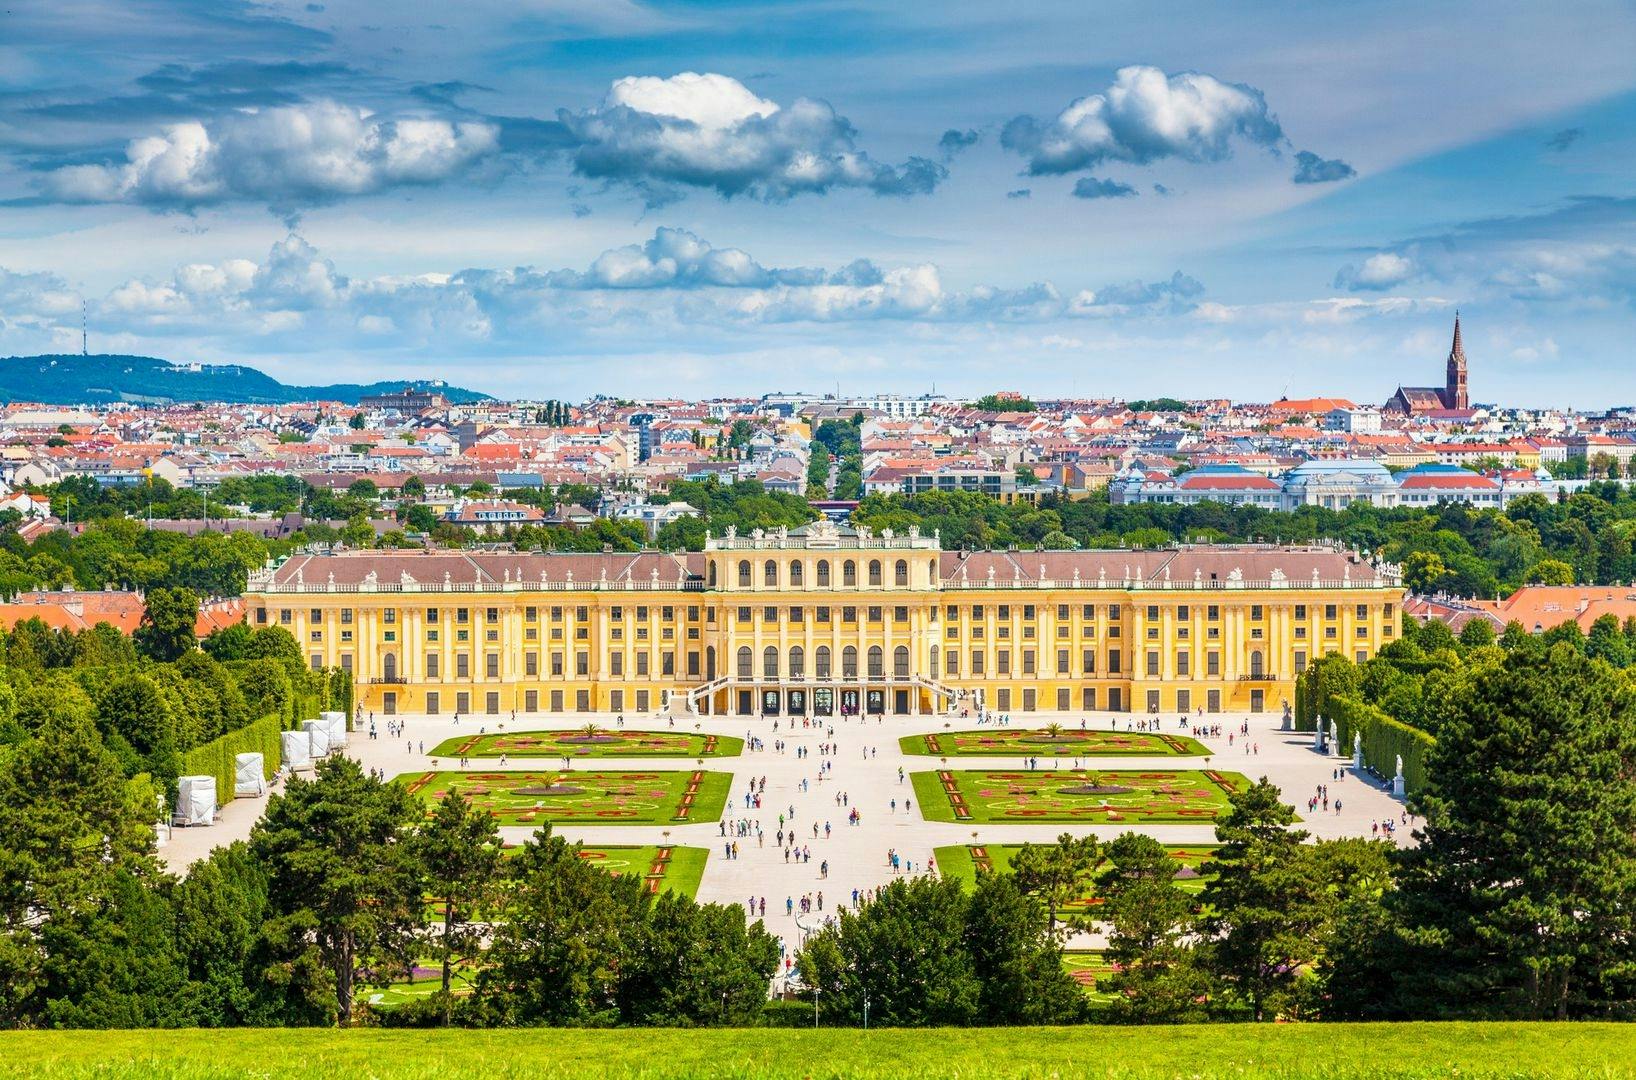 Self guided grand tour of Schönbrunn Palace Musement